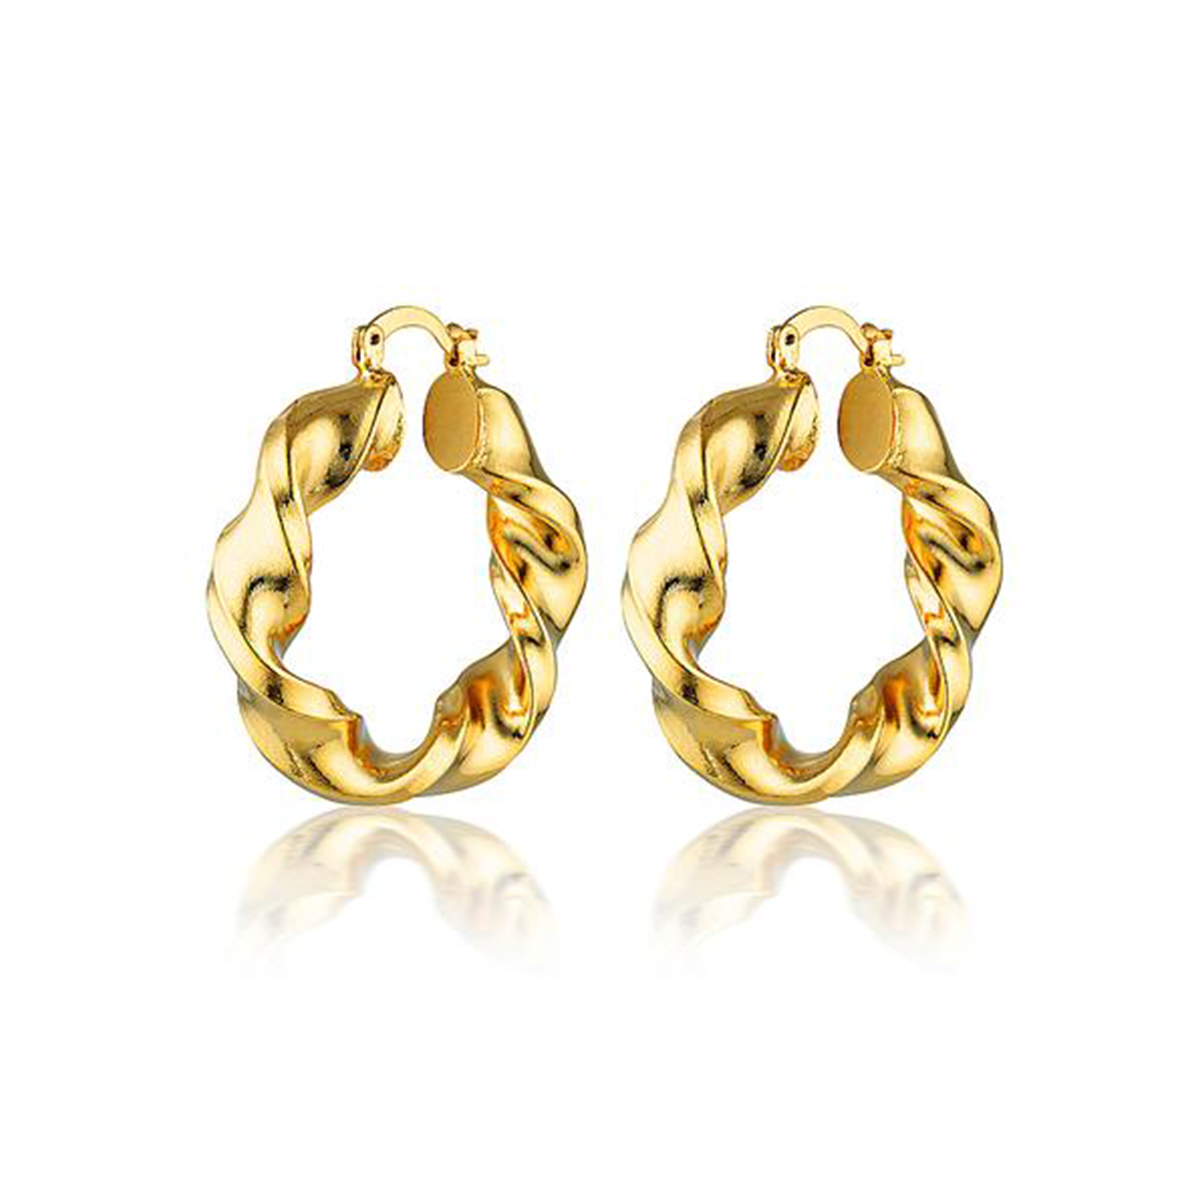 Handmade 18k Gold Vermeil Plated Twisted Hoop Earrings